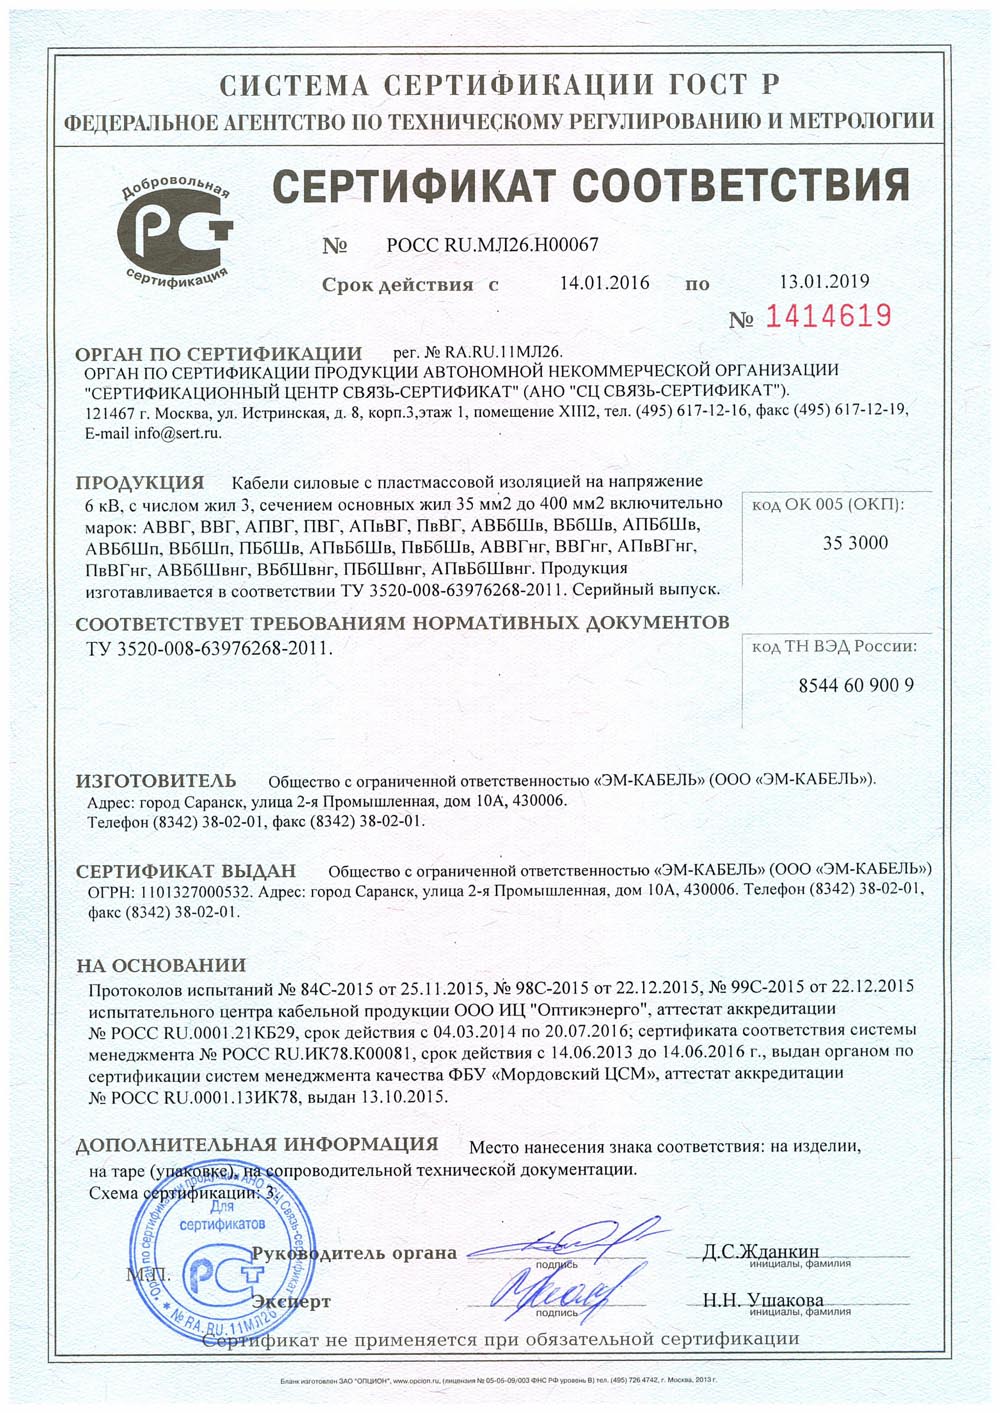 Сертификат соответствия кабелей АВББШВНГ на напряжение 6 кВ, с 3 жилами